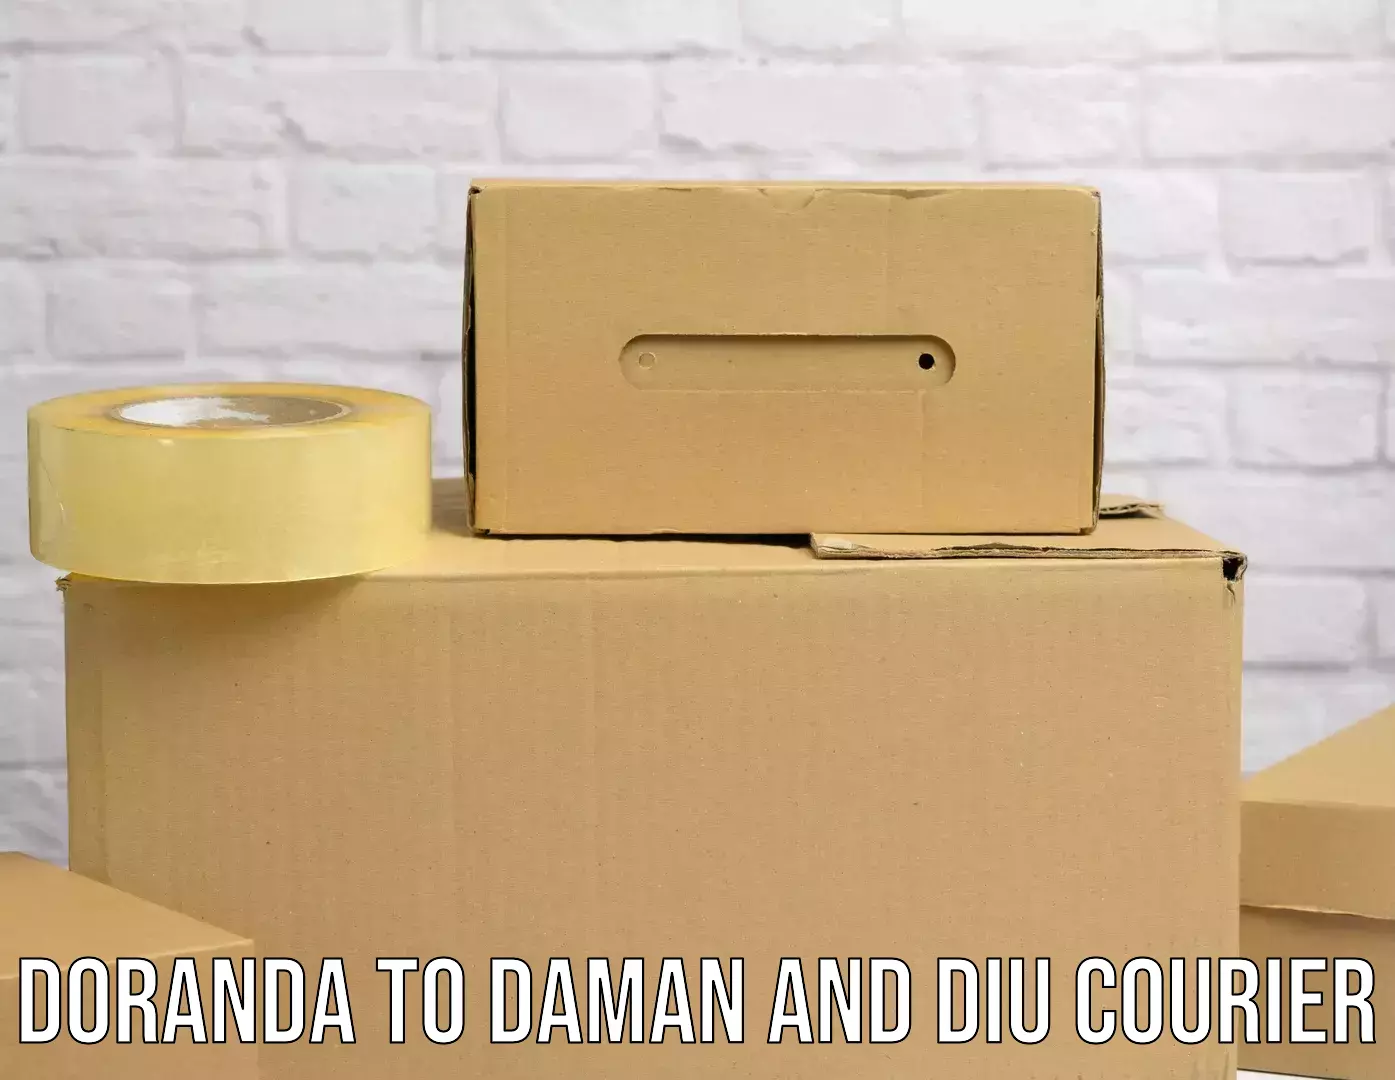 Bulk courier orders Doranda to Diu